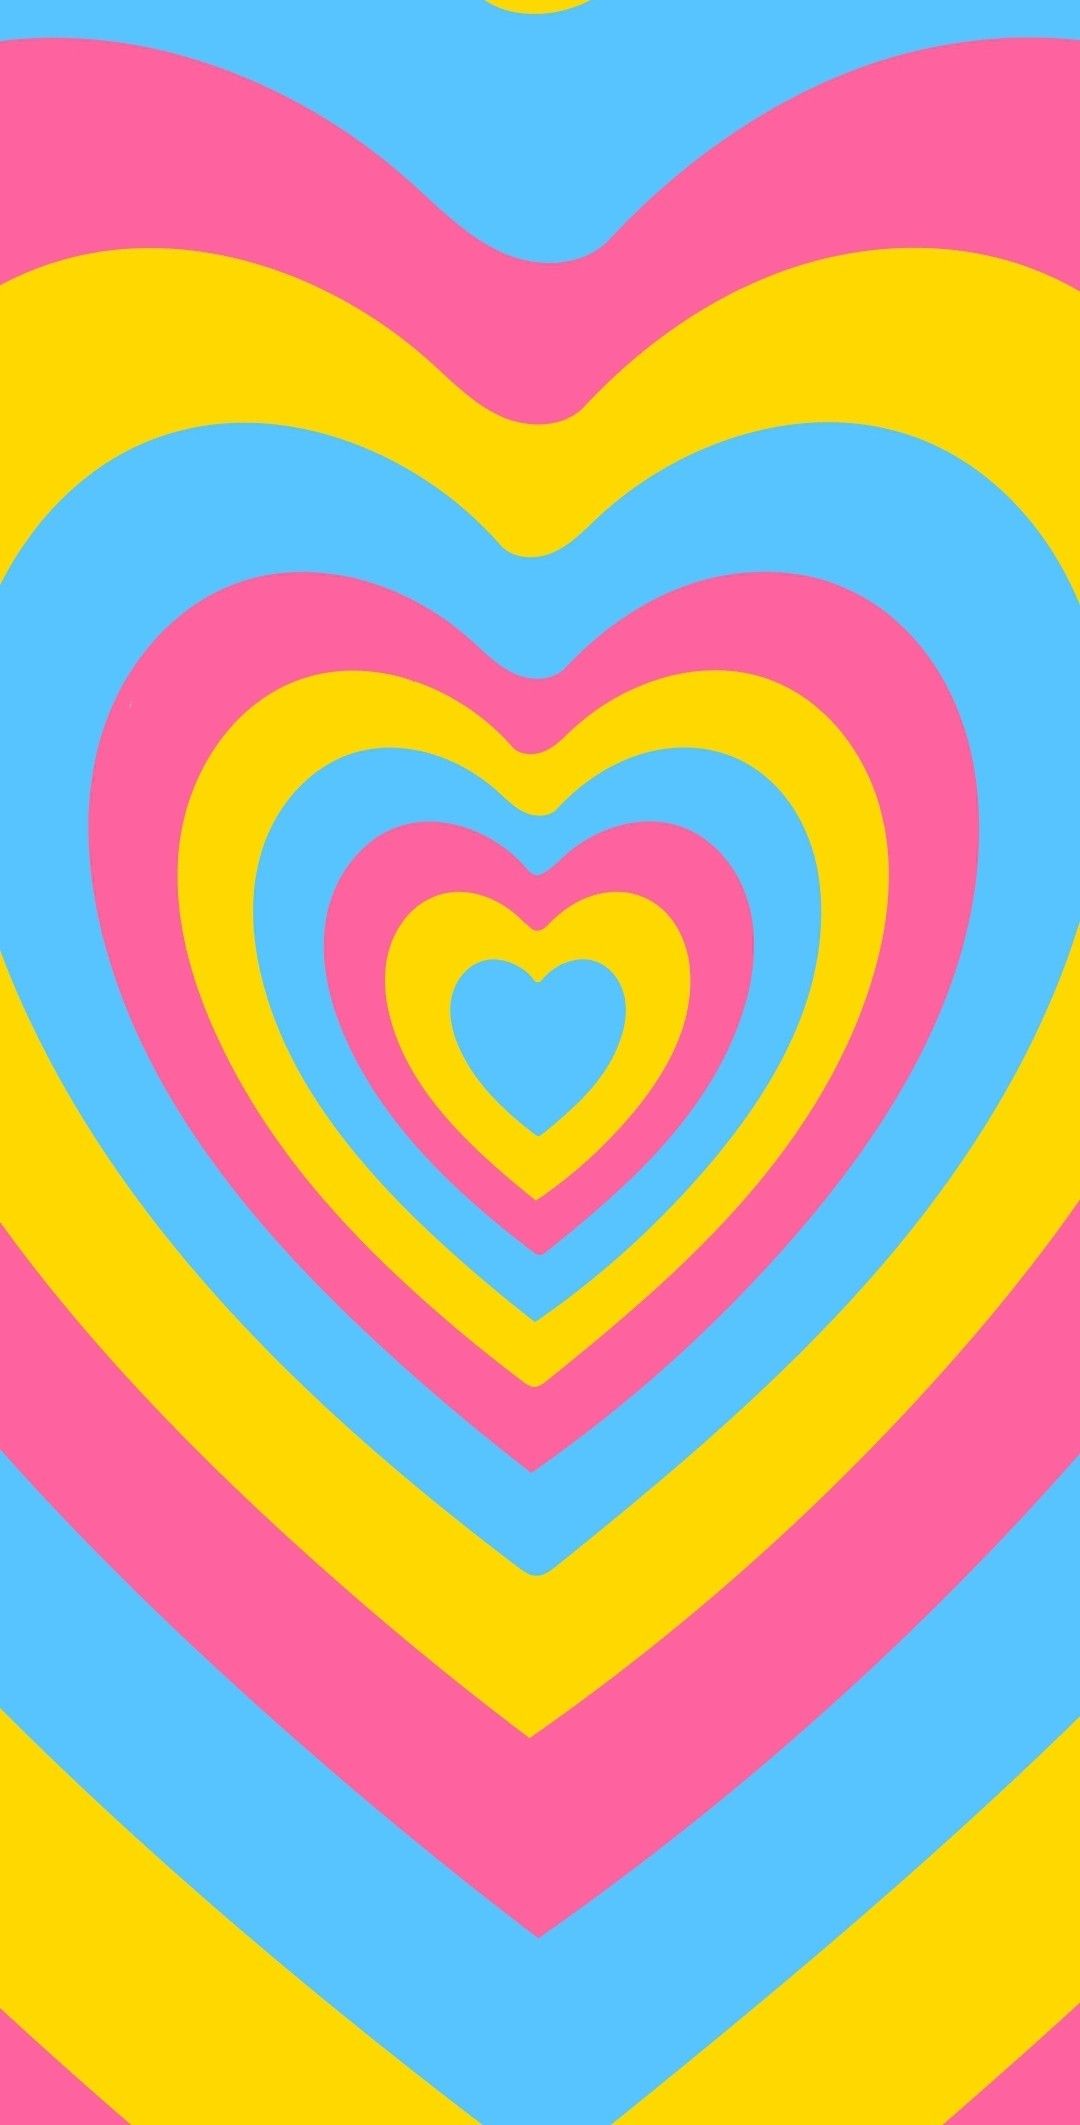 Yêu thương và tình yêu đậm chất Y2K được thể hiện qua những hình nền trái tim lãng mạn và sắc nét.